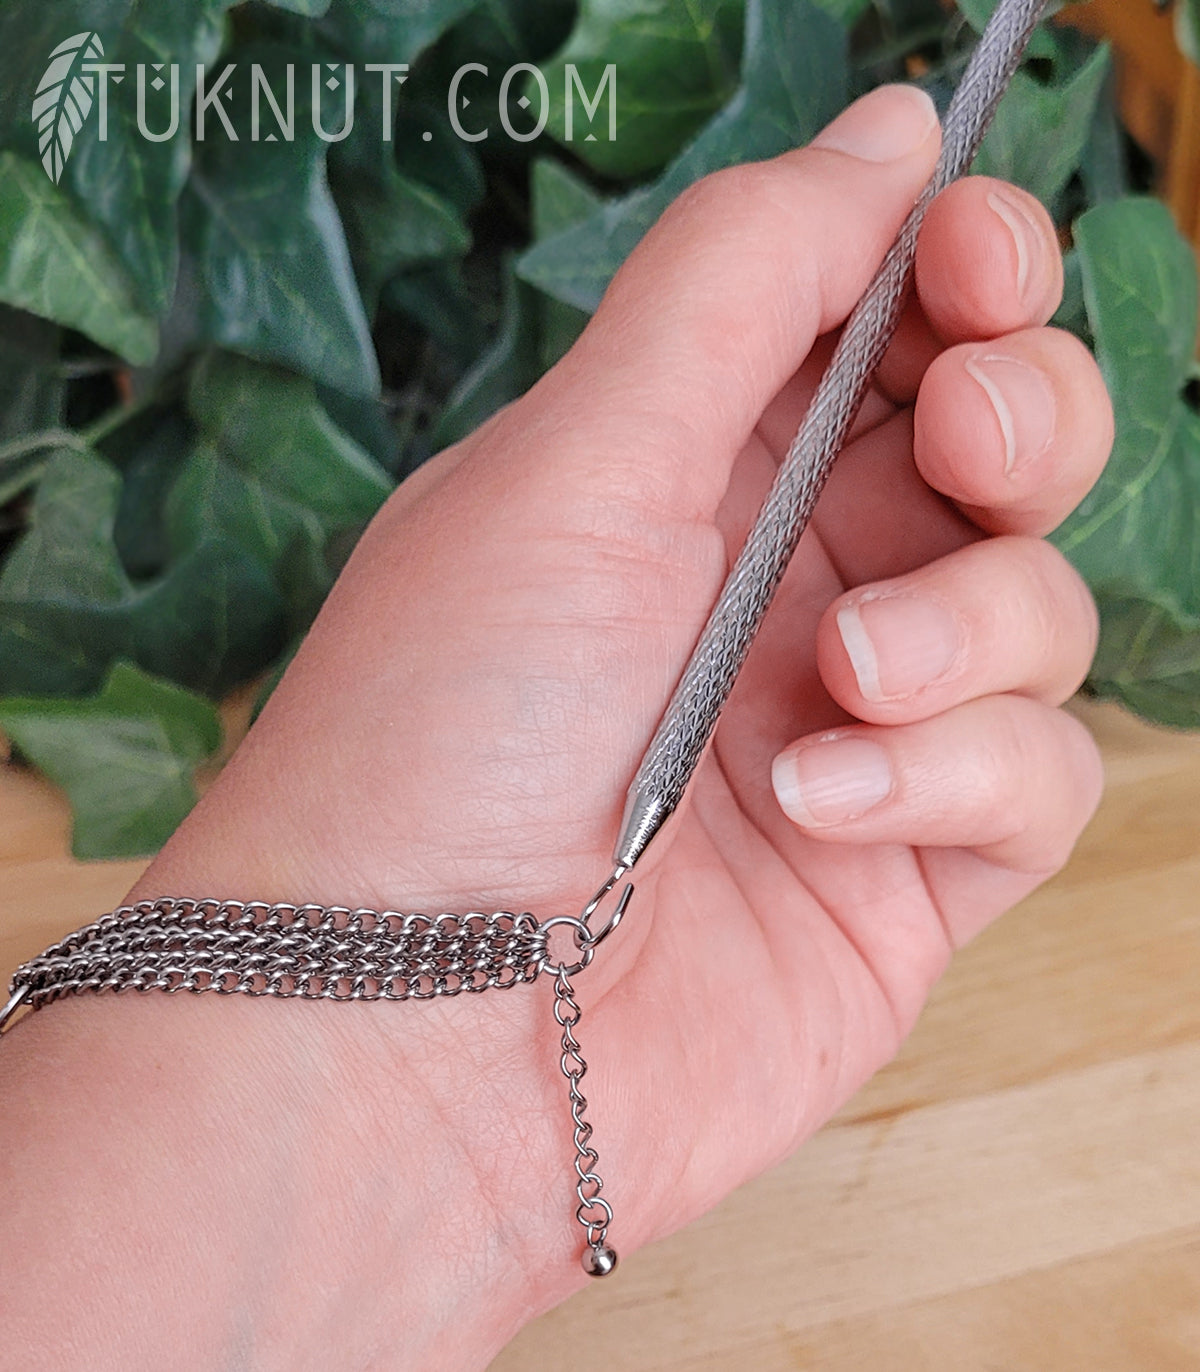 Crochet qui permet d'attacher facilement vos bracelets. TUKNUT